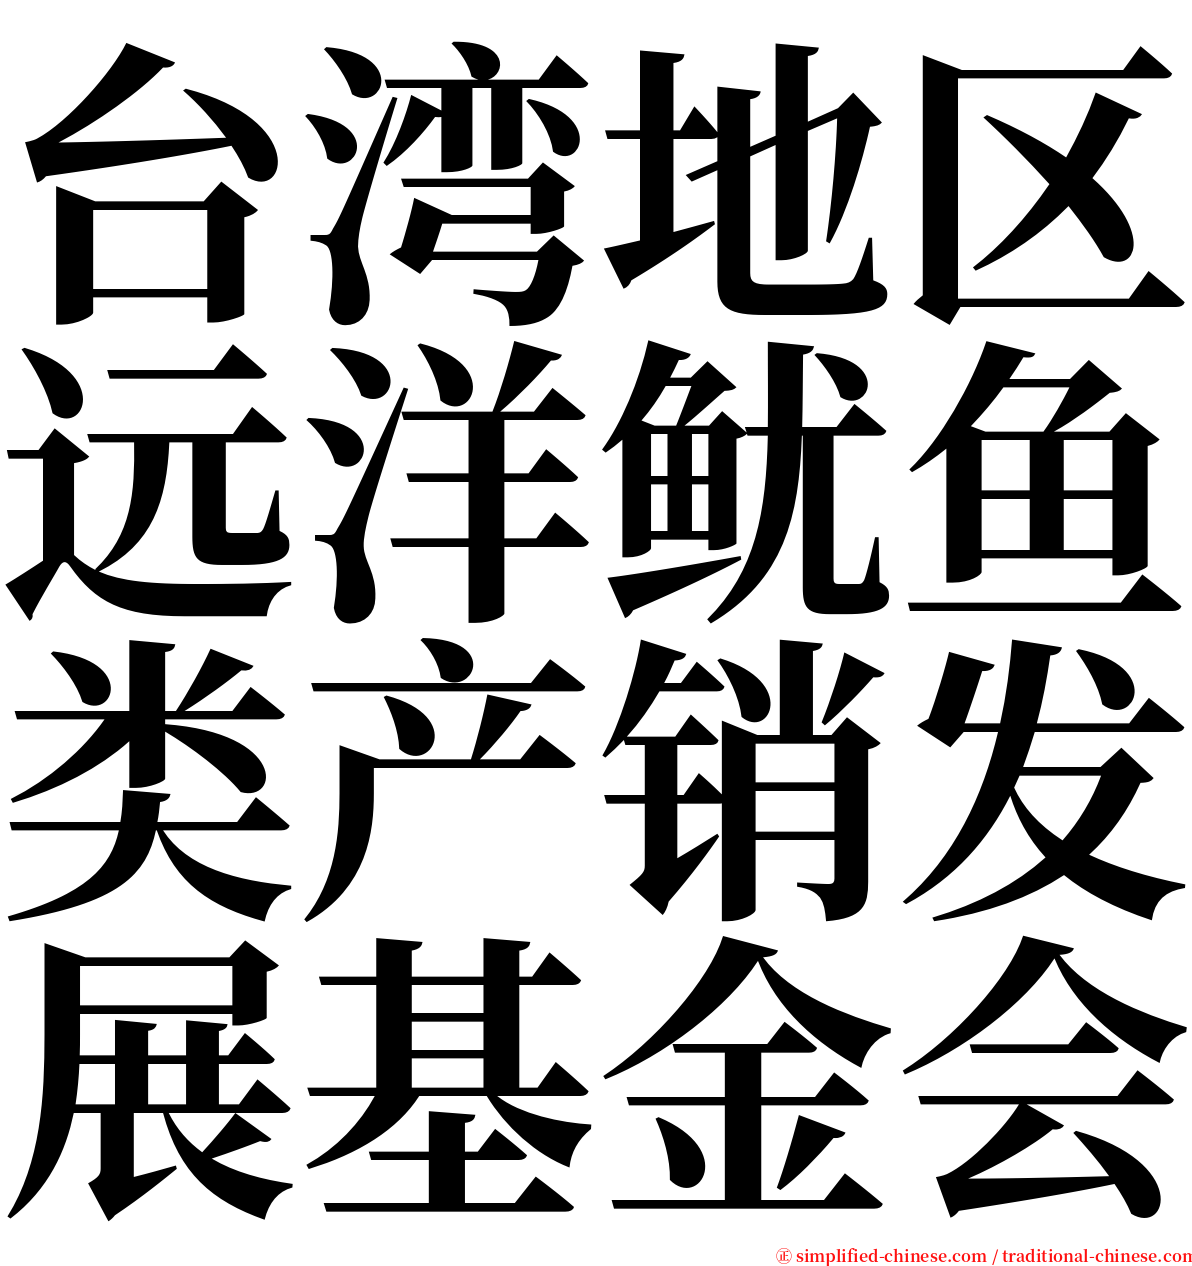 台湾地区远洋鱿鱼类产销发展基金会 serif font